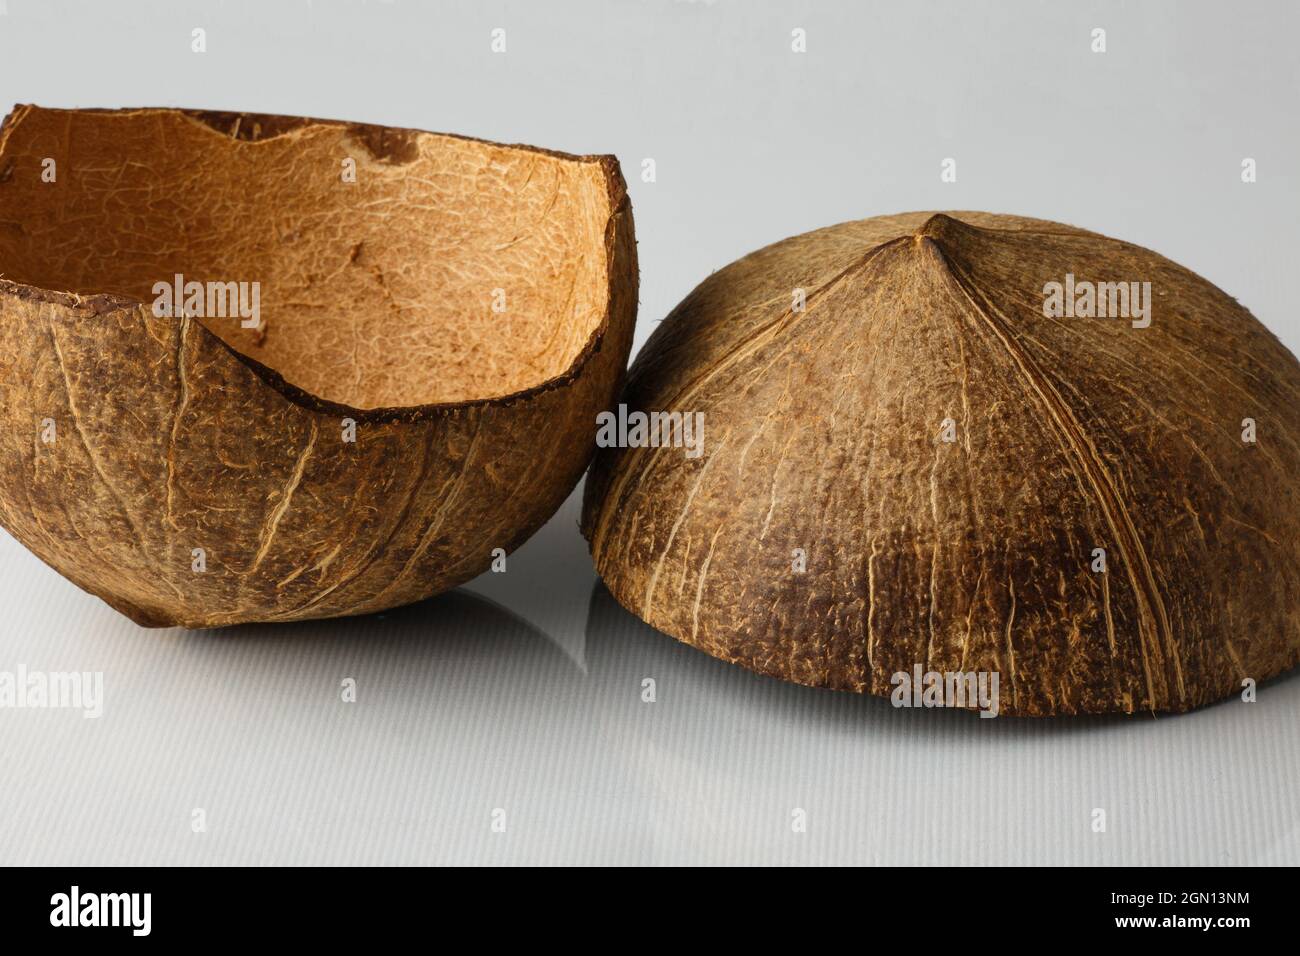 Coque de noix de coco isolée sur fond blanc. Les flocons de noix de coco sont retirés de l'intérieur de la noix de coco. Banque D'Images